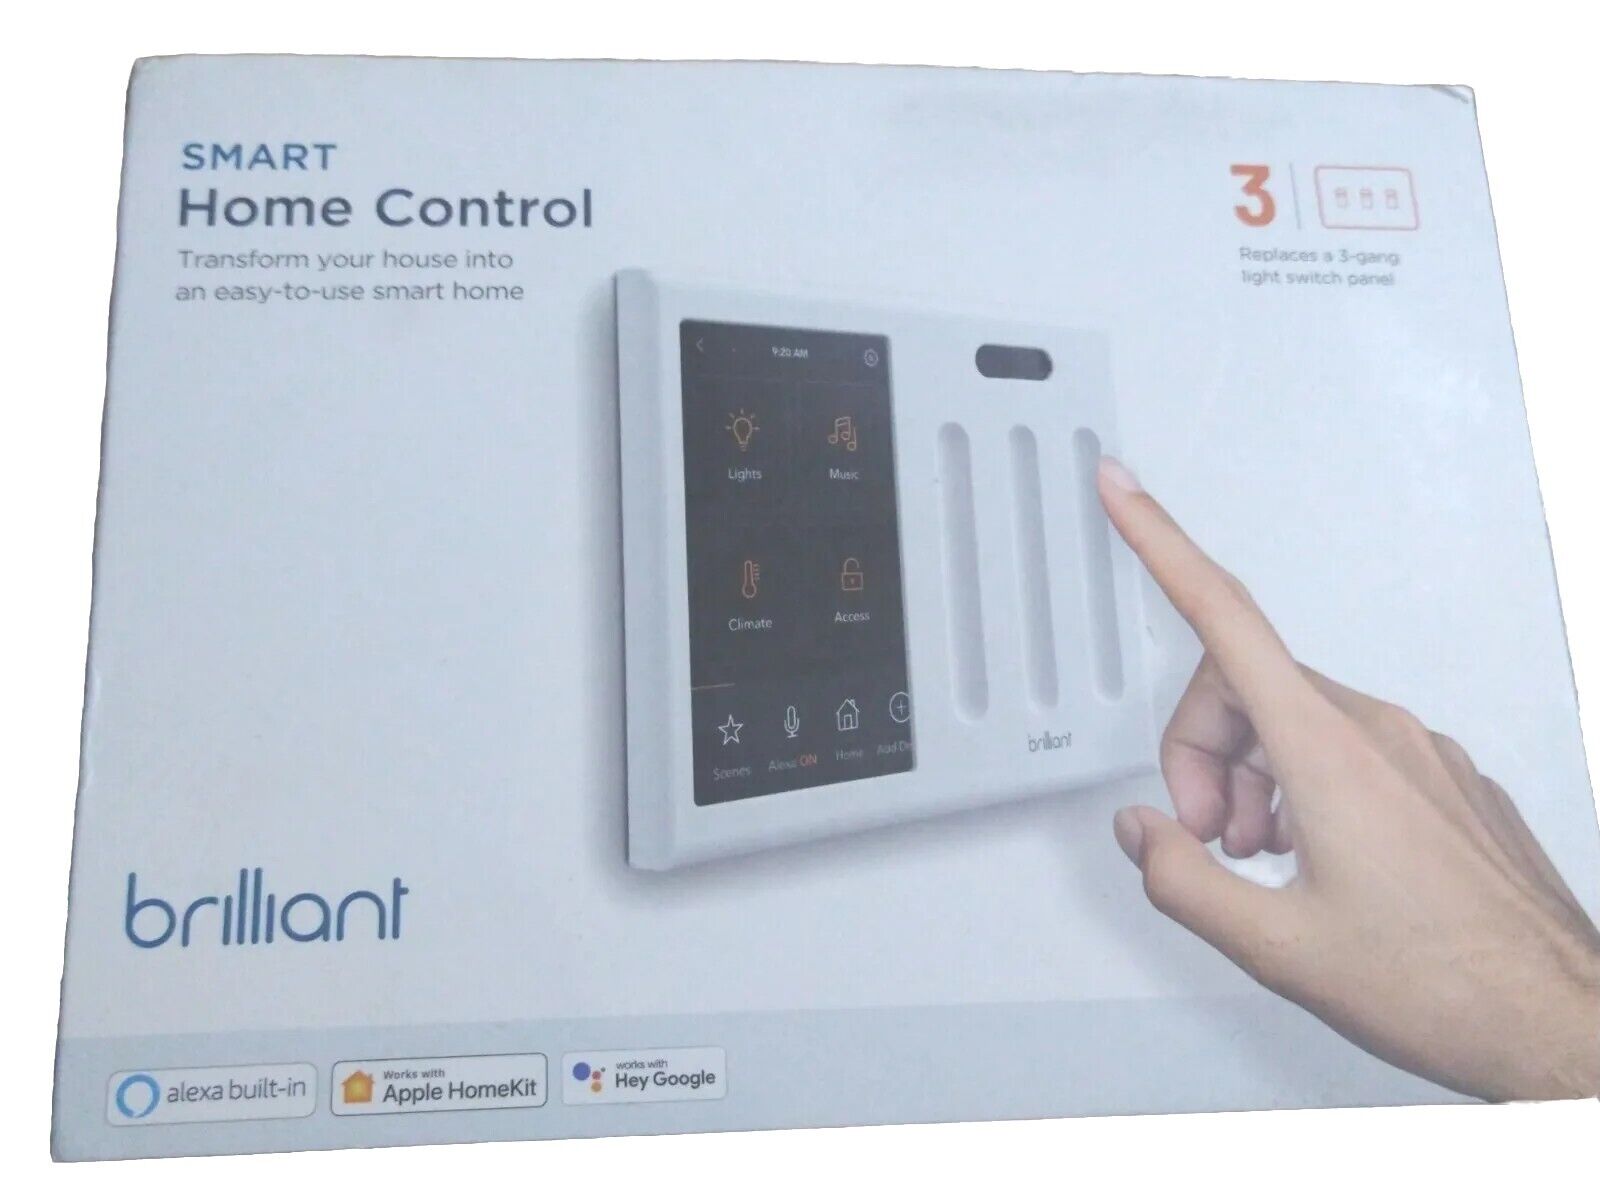 Brilliant Smart Home Control (3-Switch Panel) - NEW in box! Smarthome